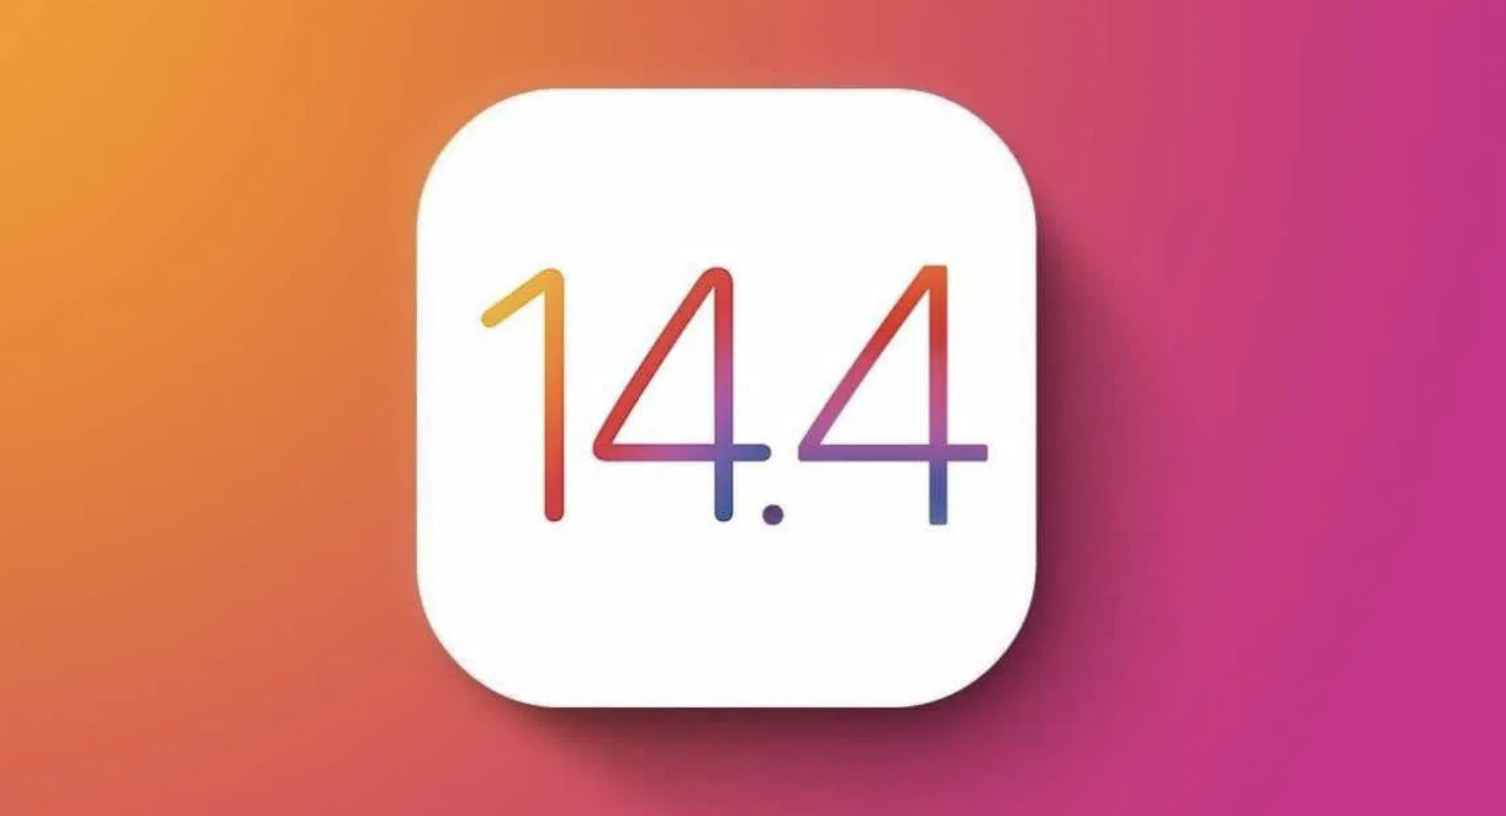 Megérkezett az iOS 14.4 a letöltés mindenkinek ajánlott